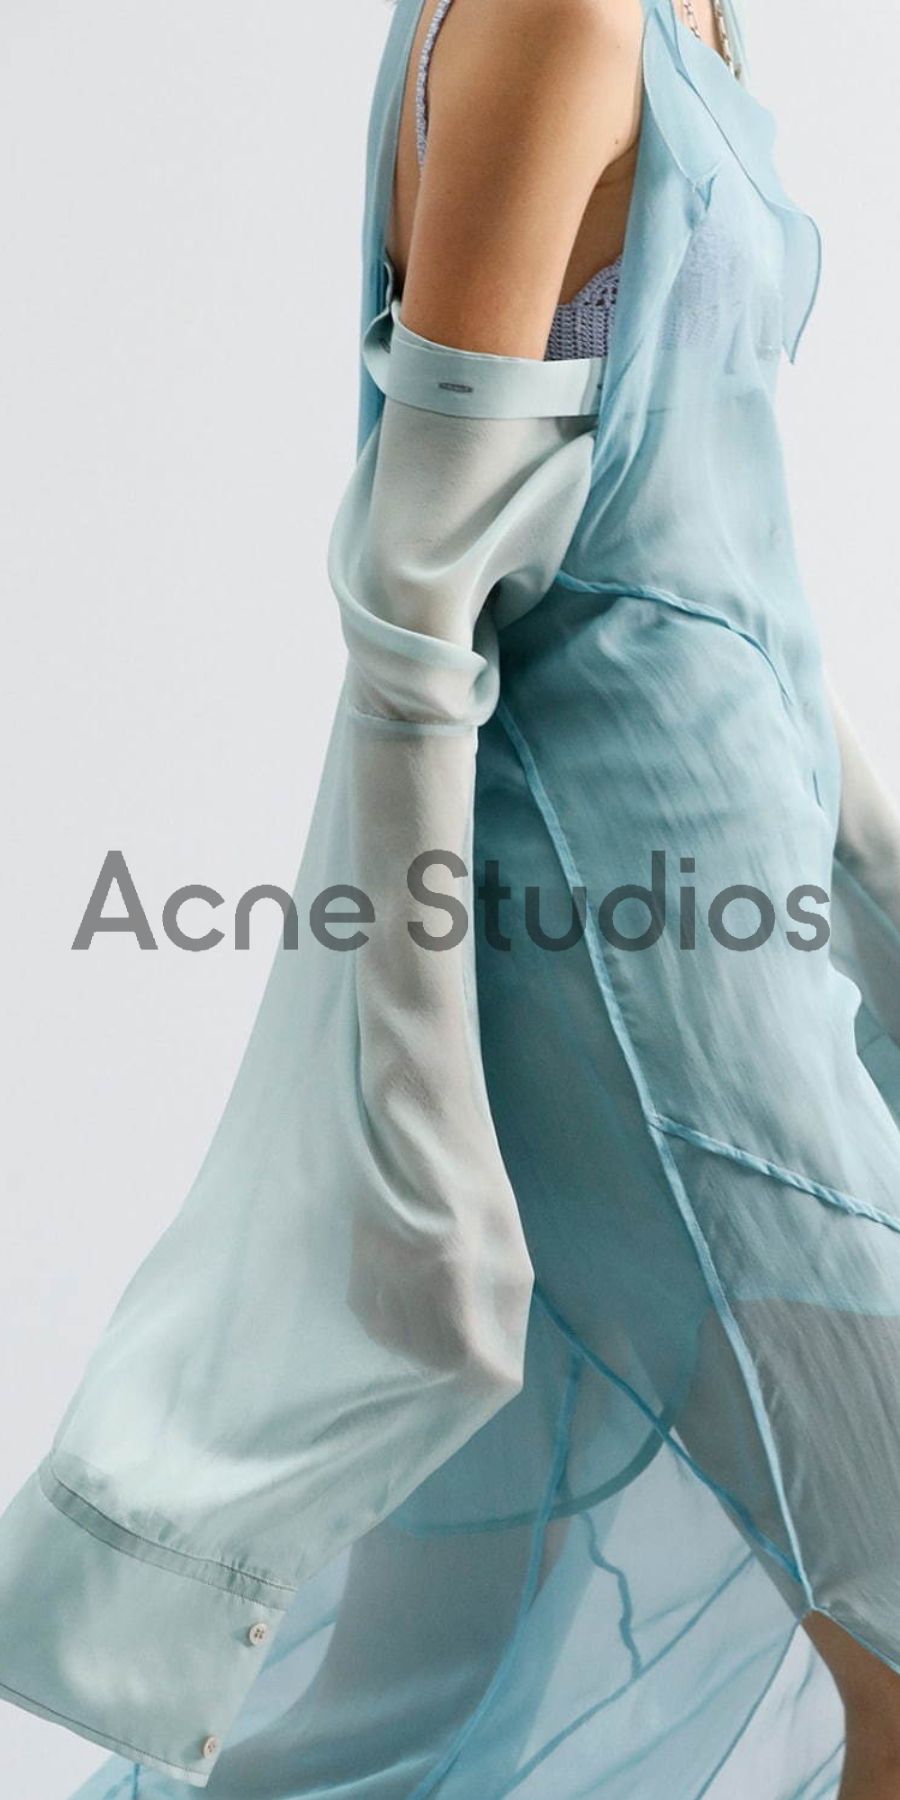 Acne Studios(アクネストゥディオズ)買取専門店